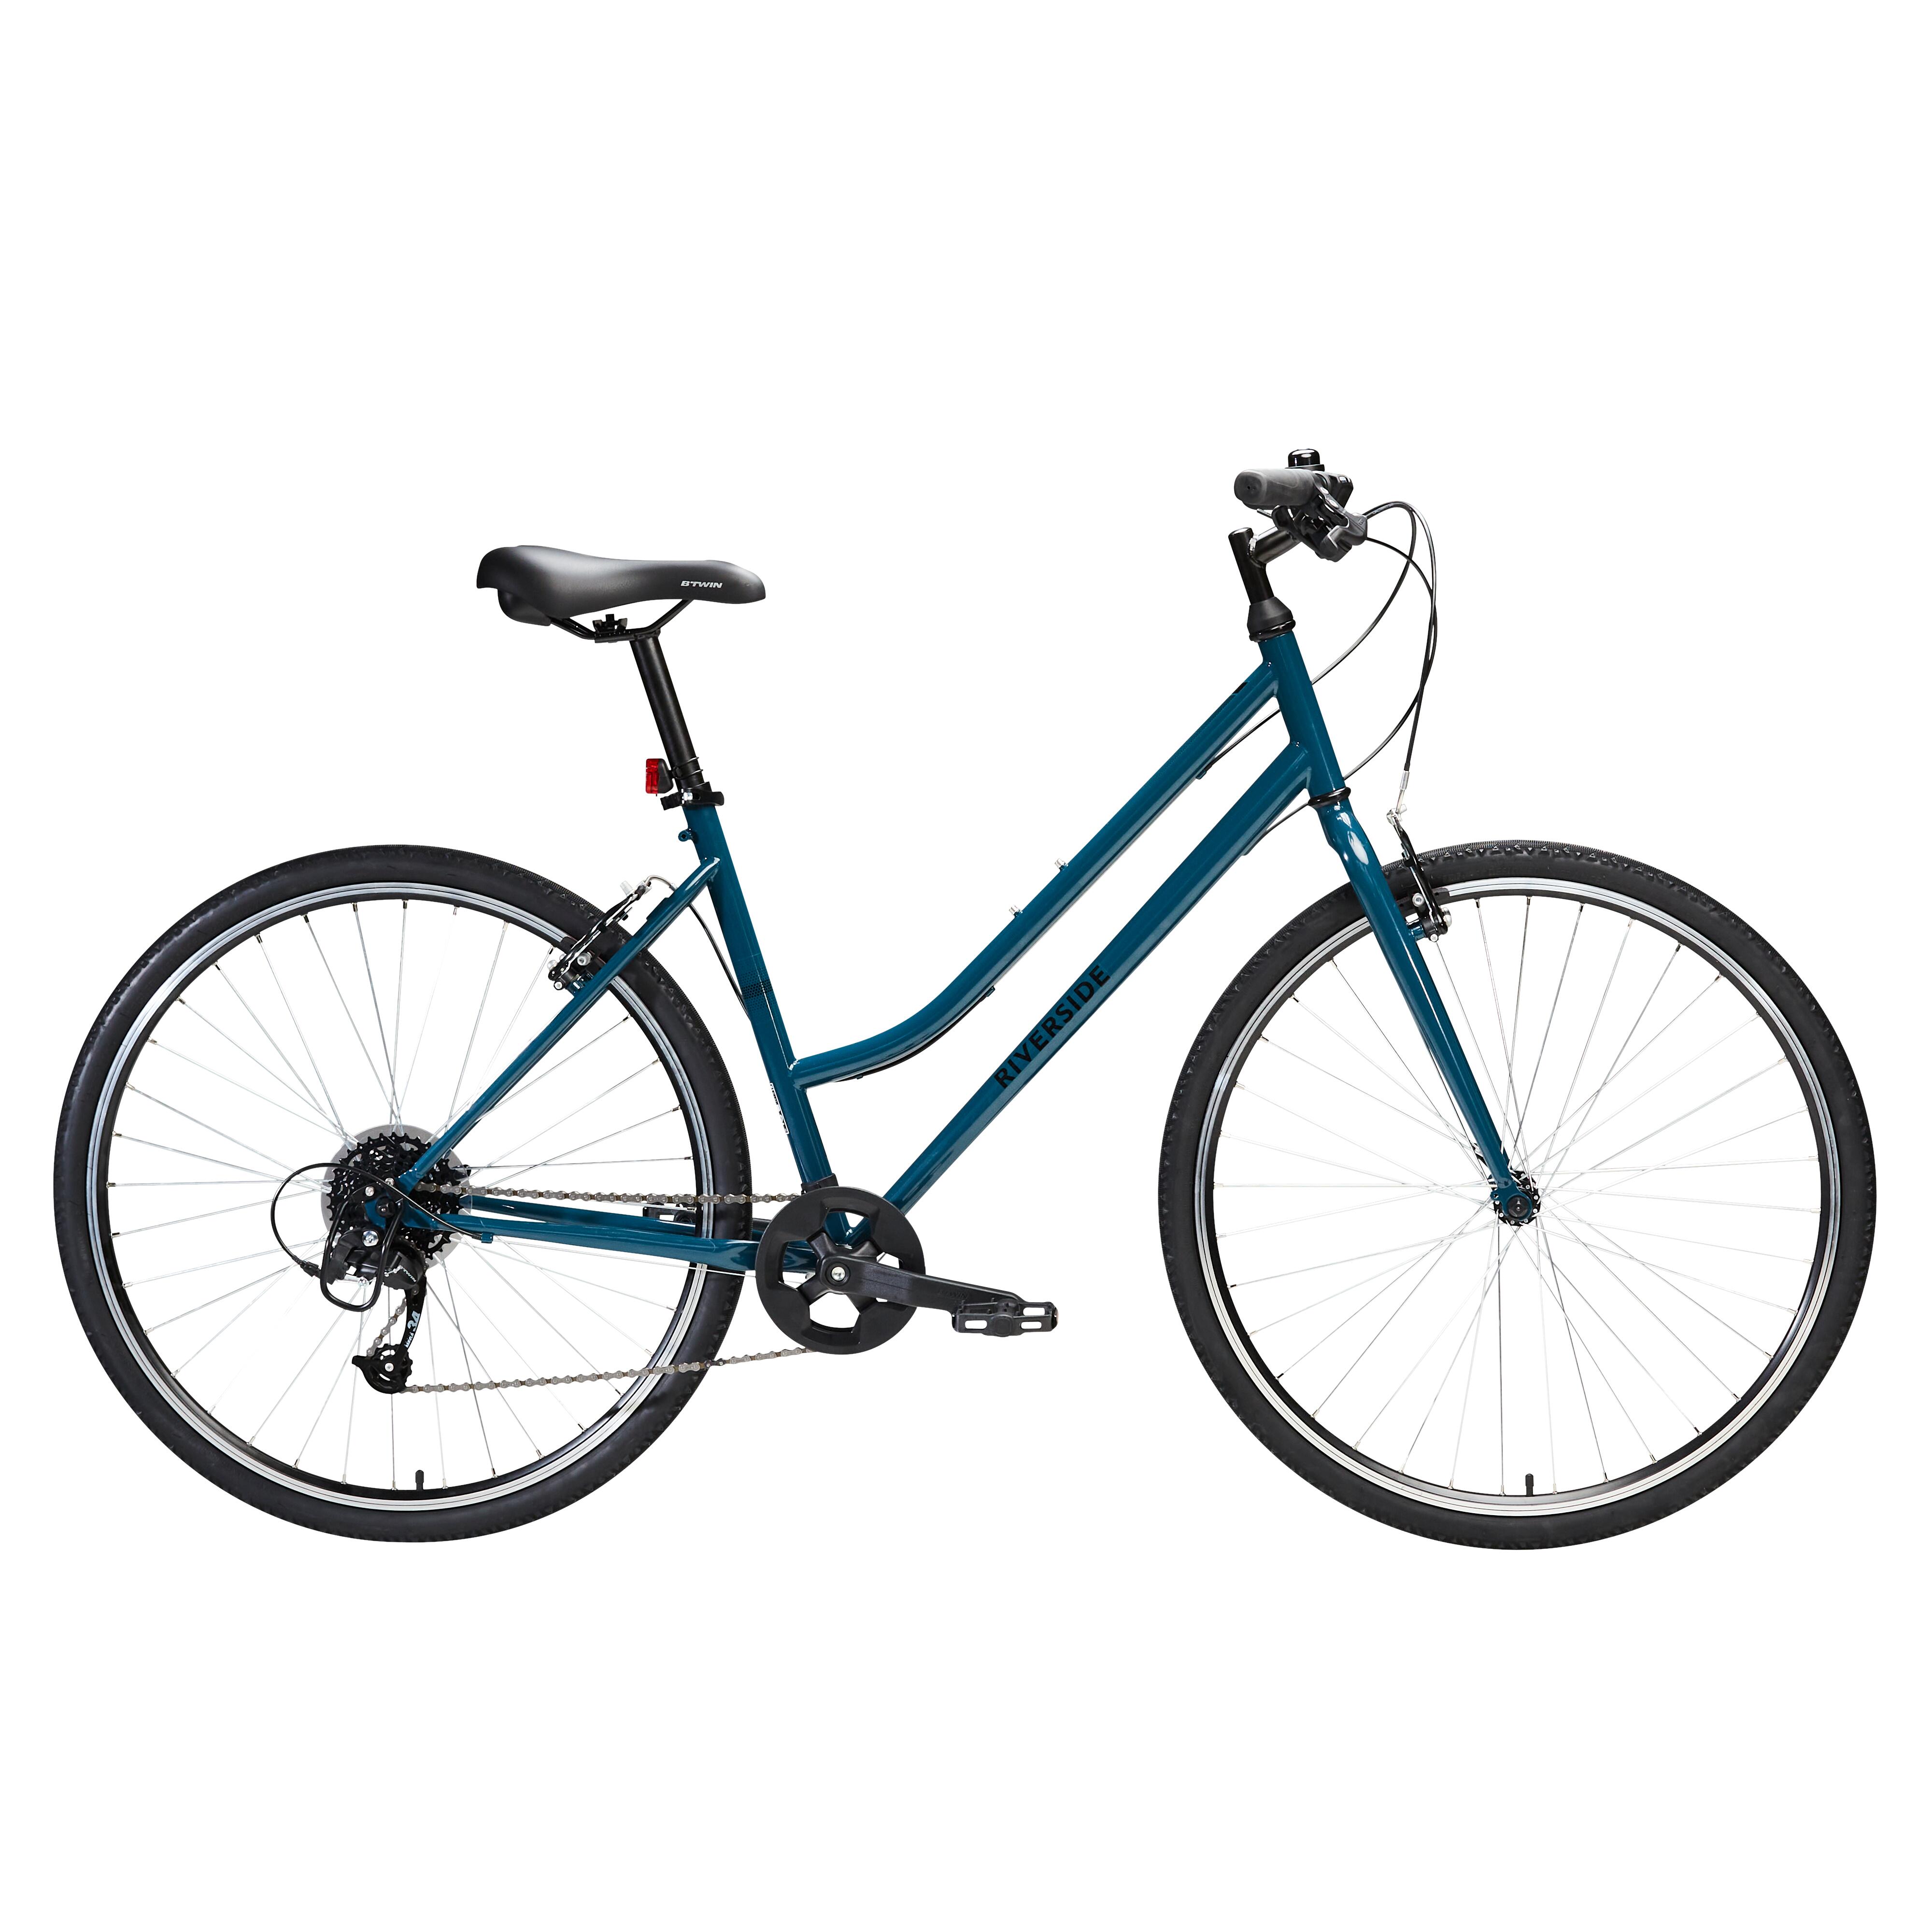 Bicicletă polivalentă Riverside 120 Albastru La Oferta Online decathlon imagine La Oferta Online